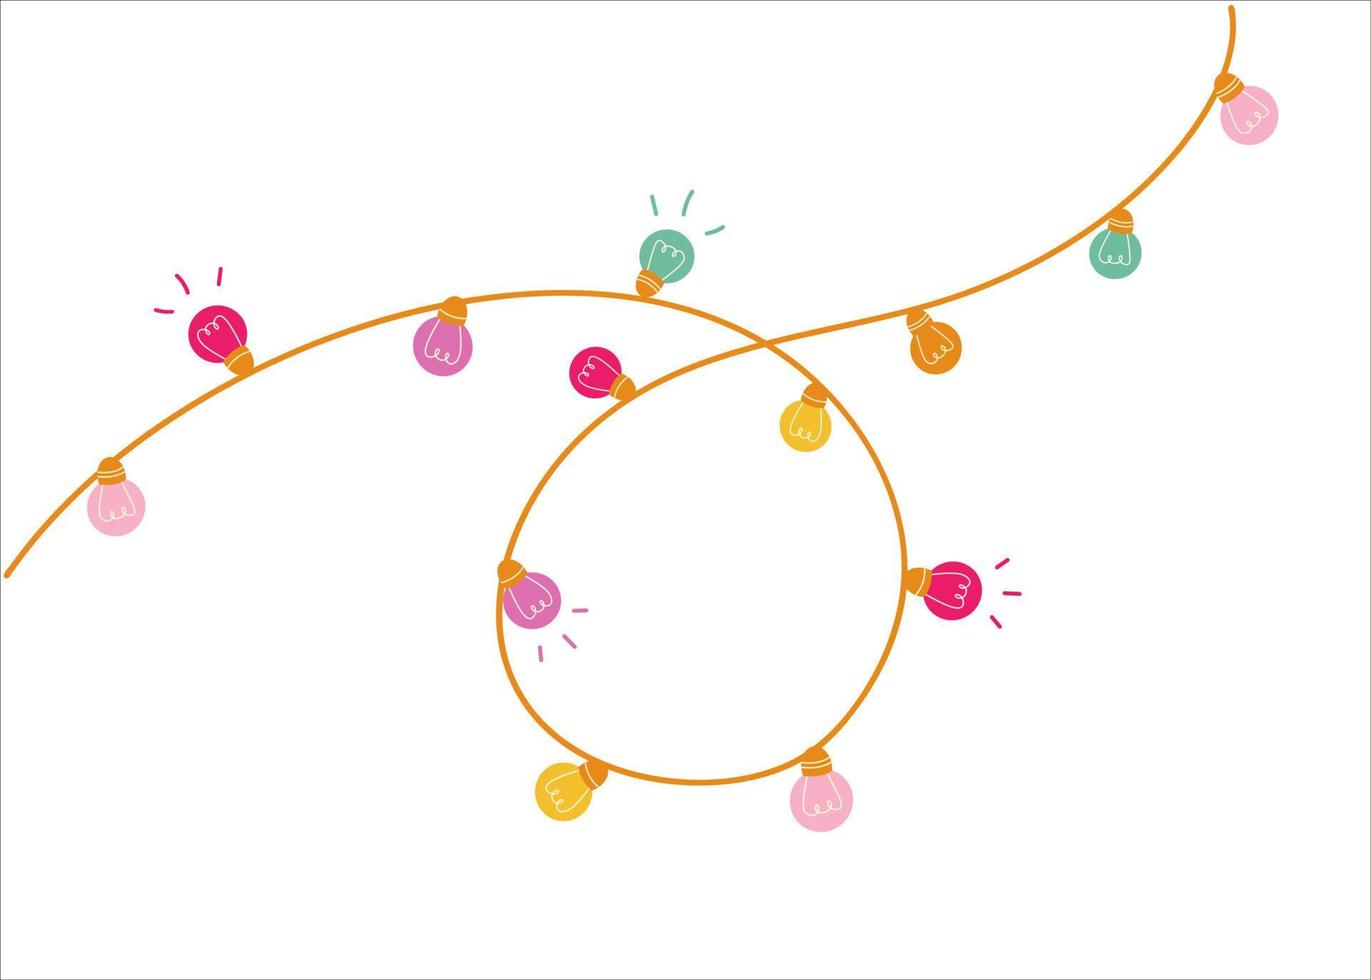 Feiertagsdesignillustration mit bunten Girlanden von Glühbirnen. Urlaubskonzept mit farbigen Laternen. festliches element für weihnachten, party, geburtstag. Vektor-Hintergrund. vektor